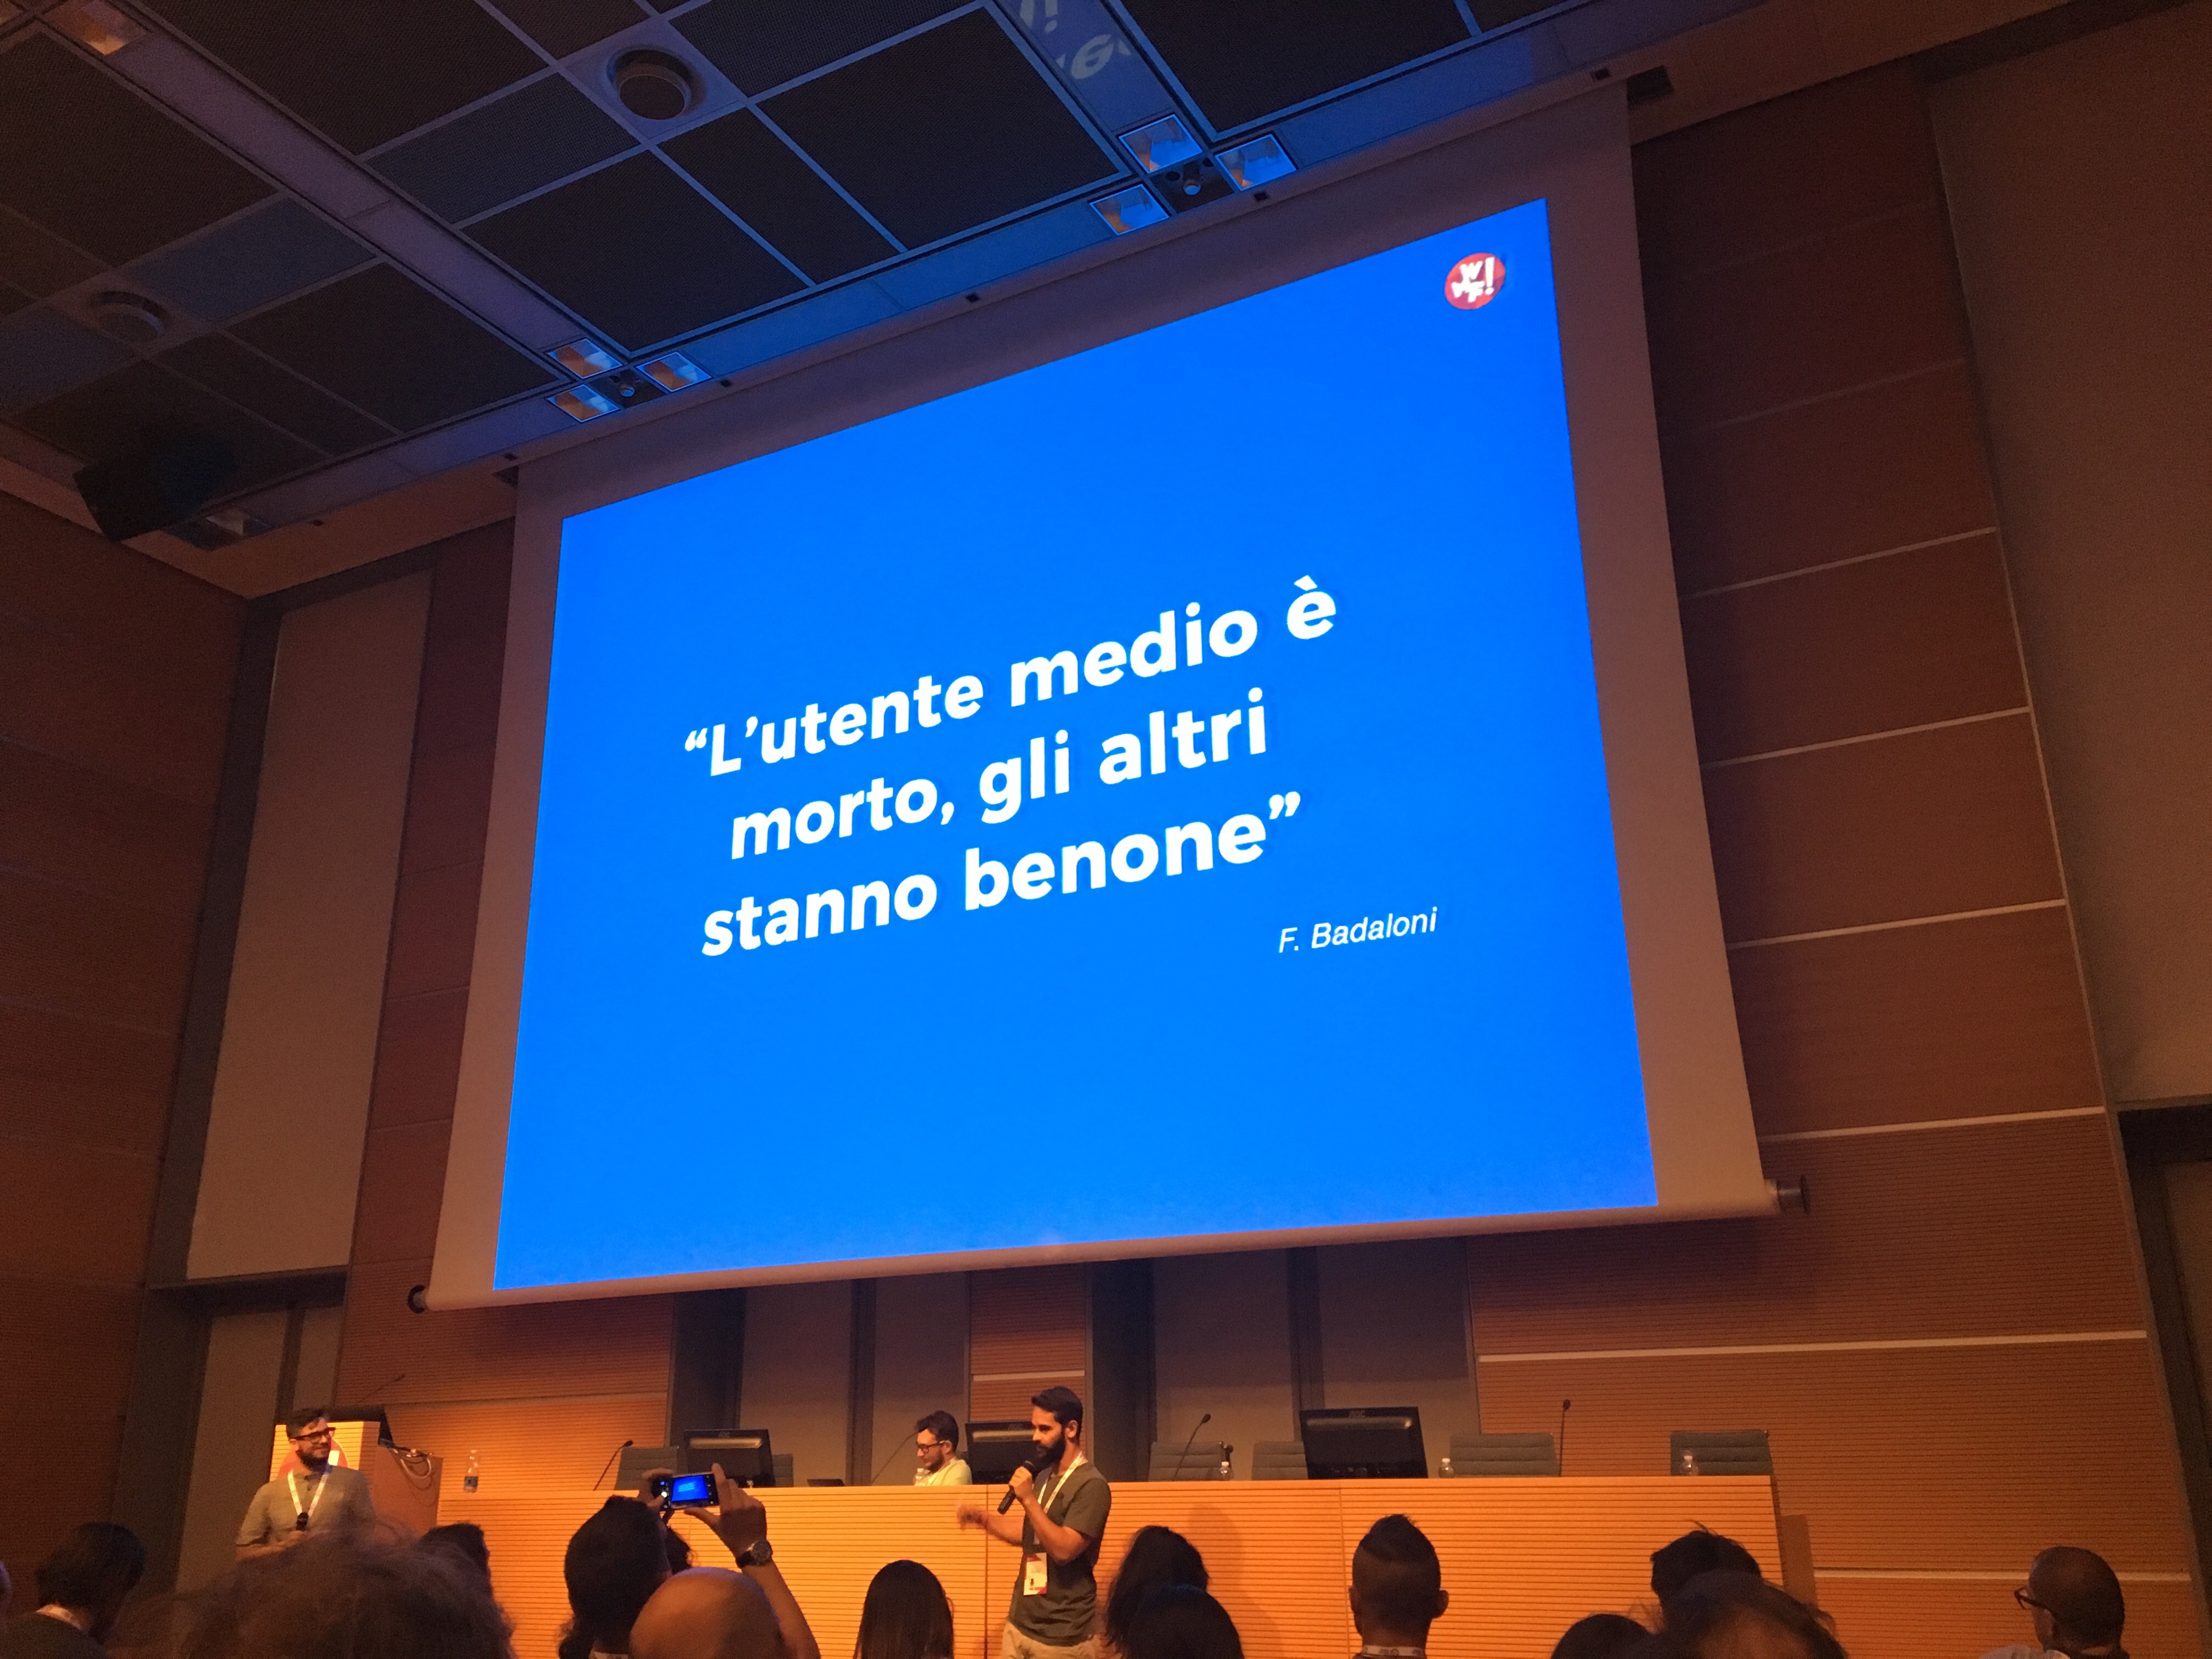 Presentazione di Diego Lavecchia e Fabio Nucatolo al Web Marketing Festival 2017